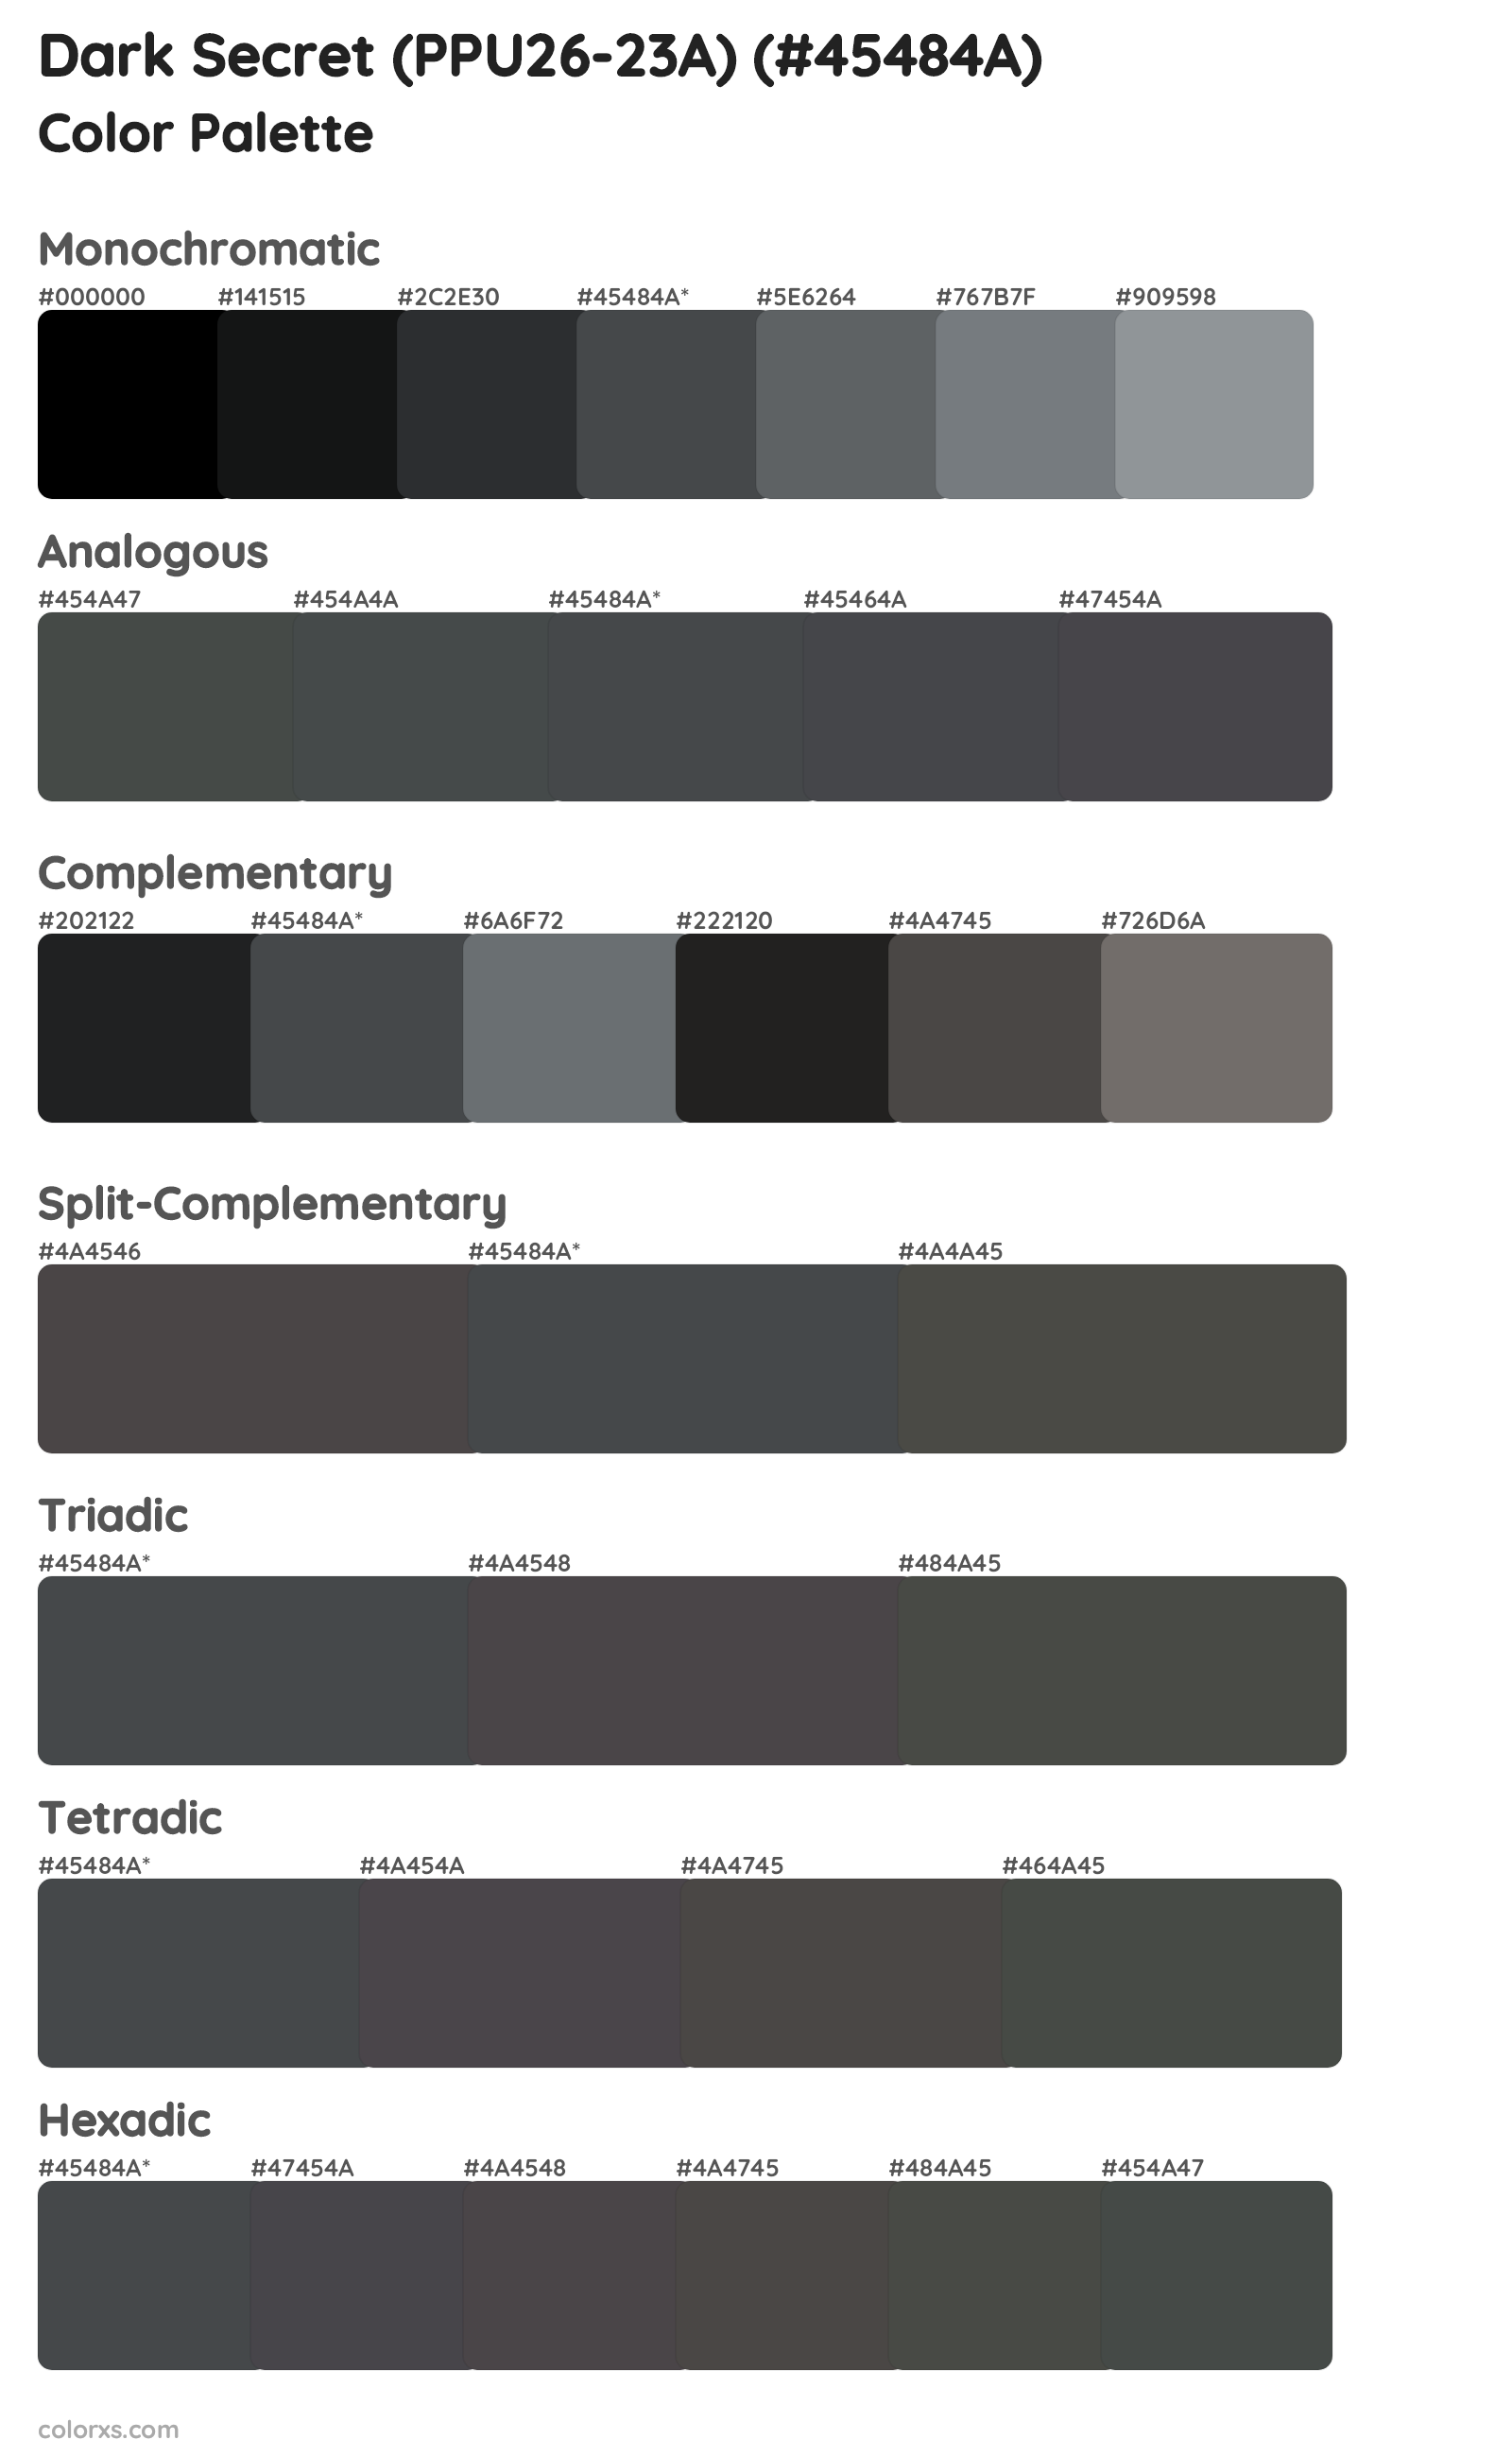 Dark Secret (PPU26-23A) Color Scheme Palettes